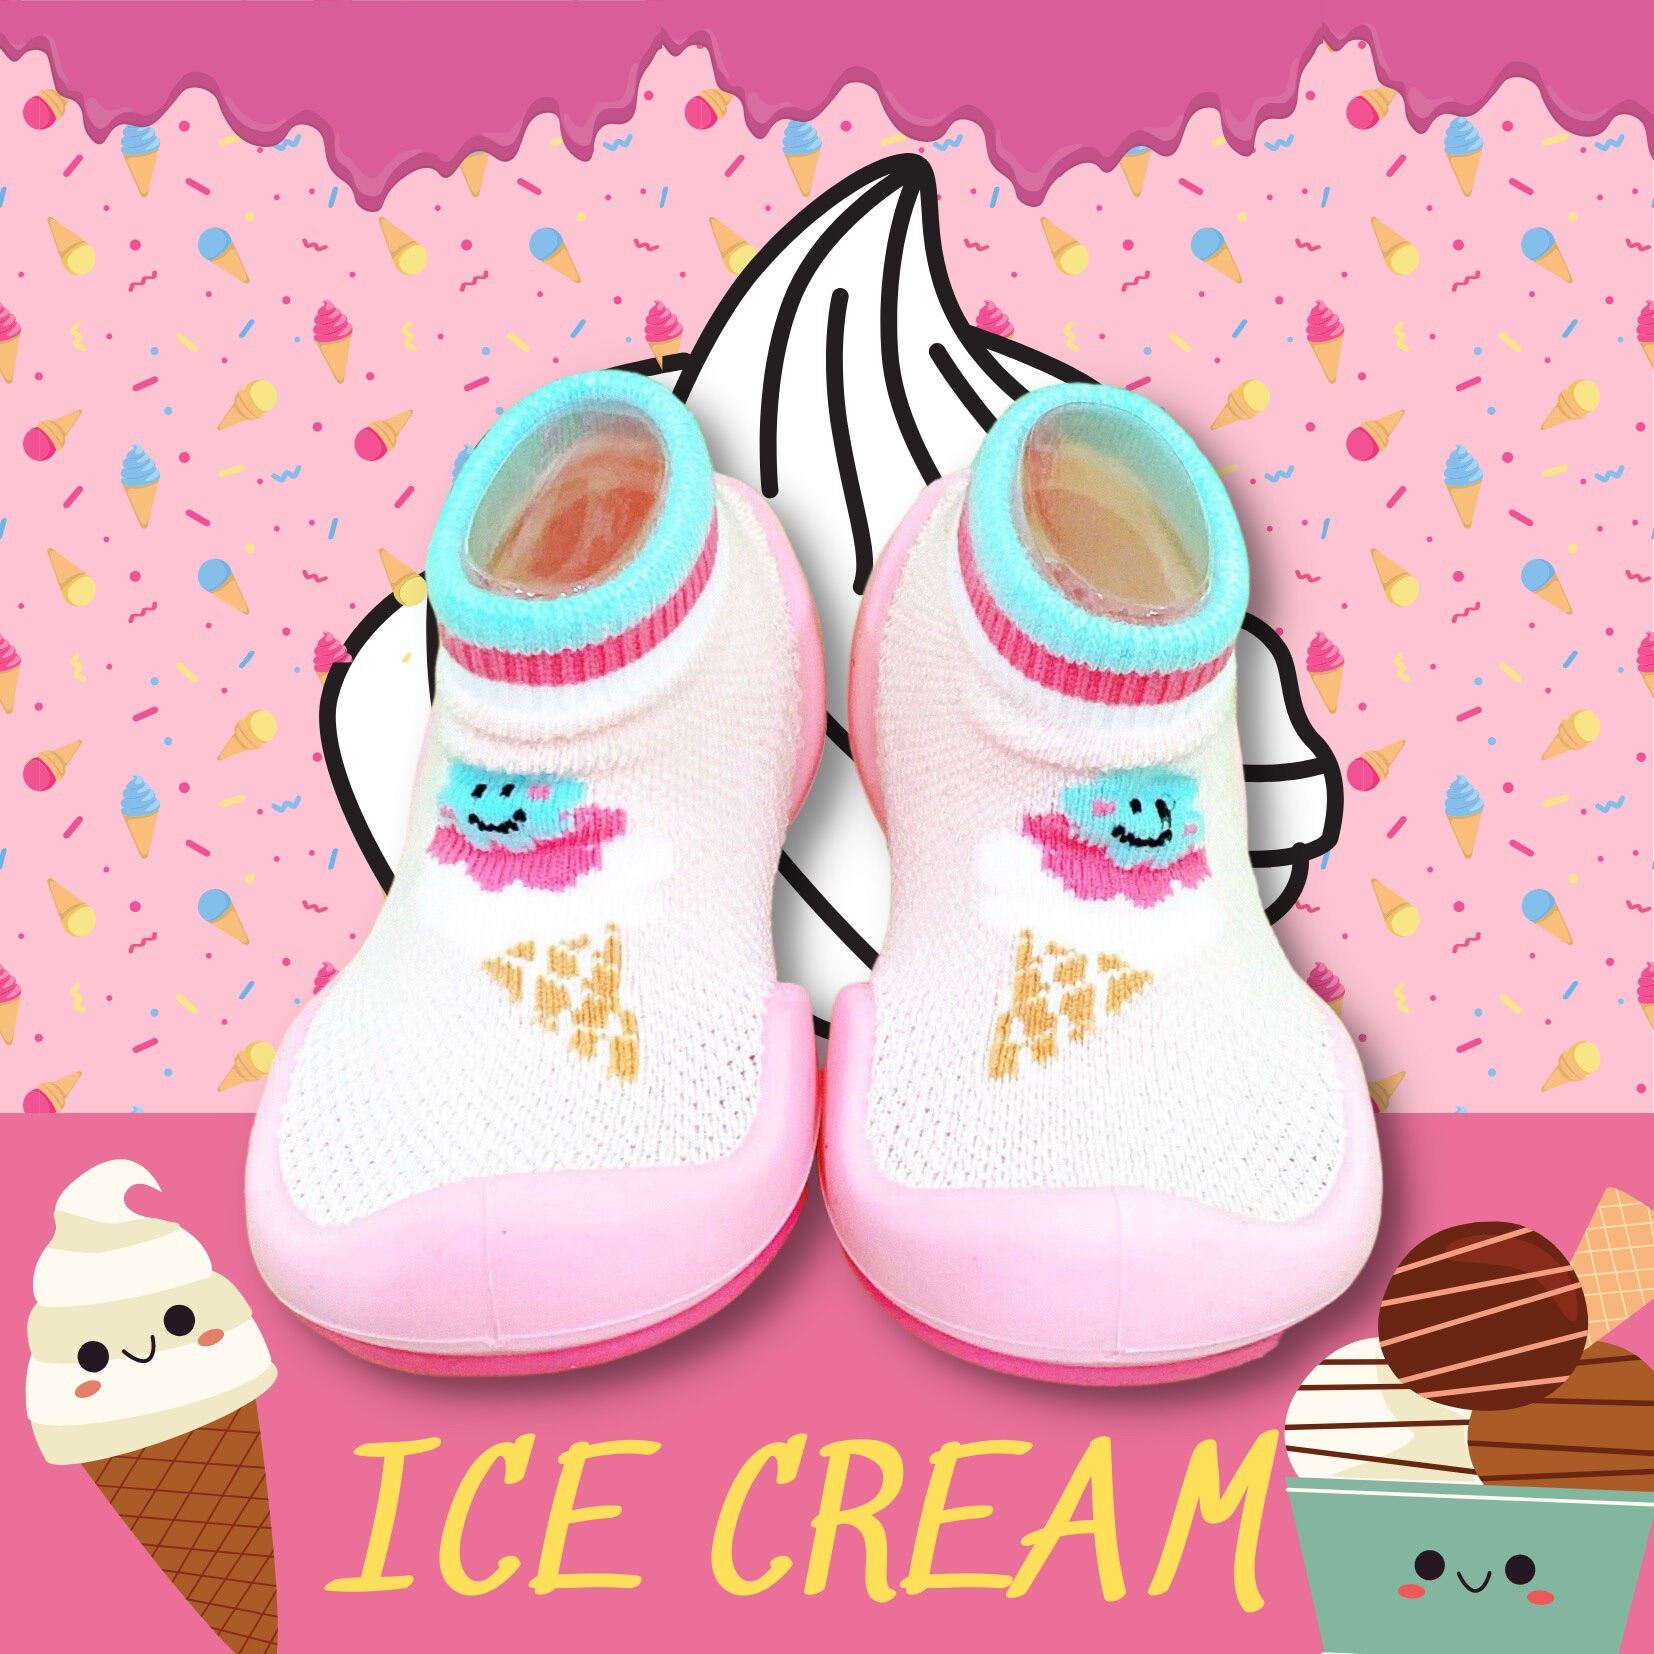 Chính hãng Ggomoosin Giày tập đi cho bé cưng ice cream